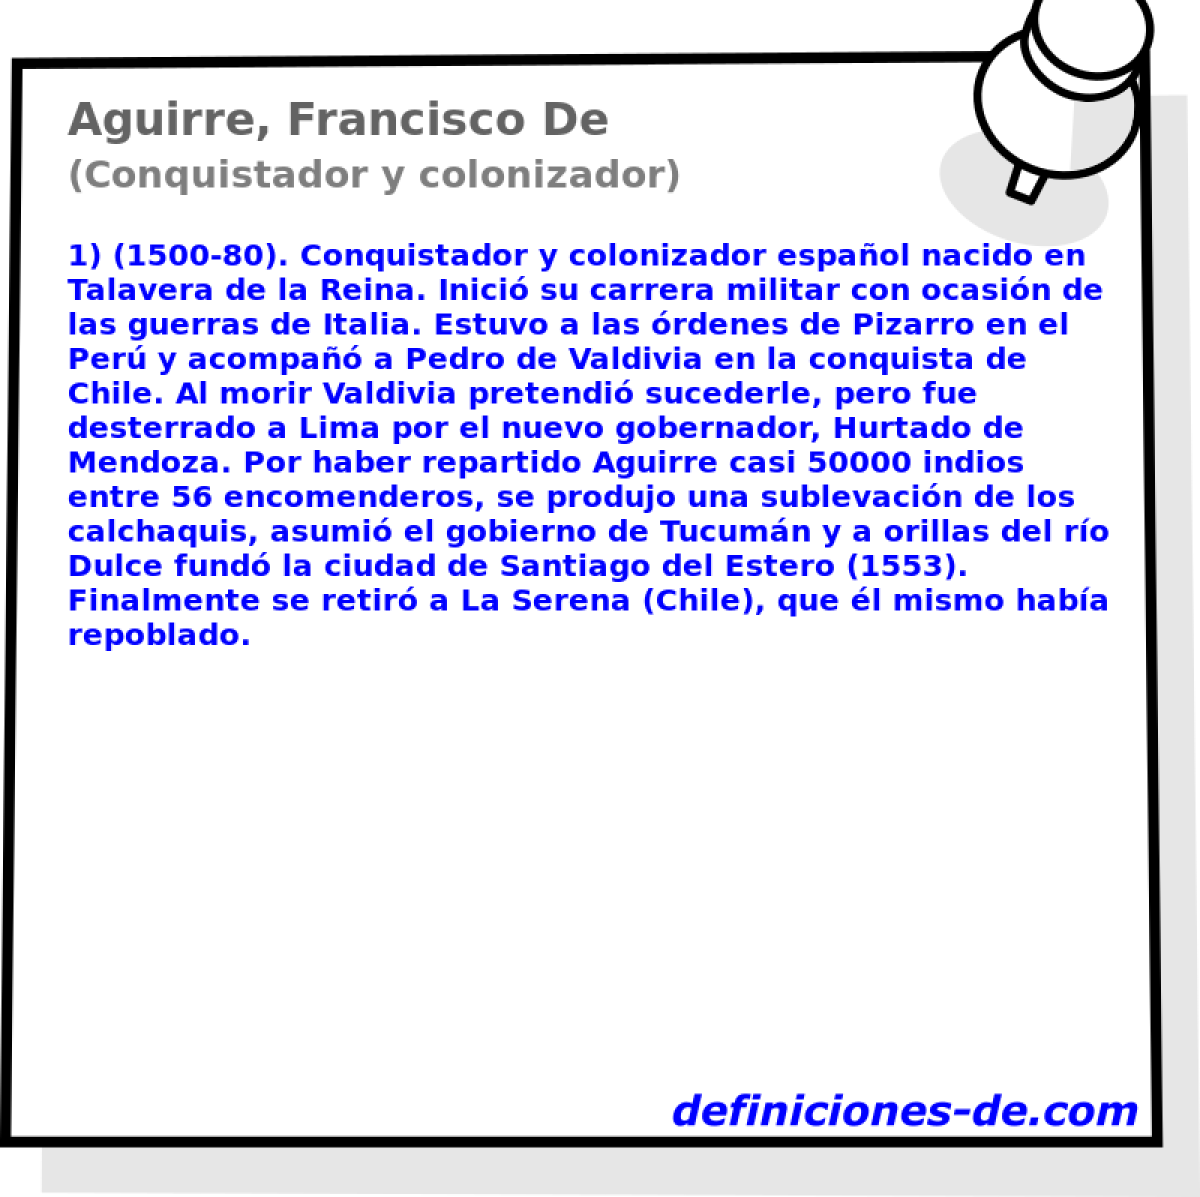 Aguirre, Francisco De (Conquistador y colonizador)